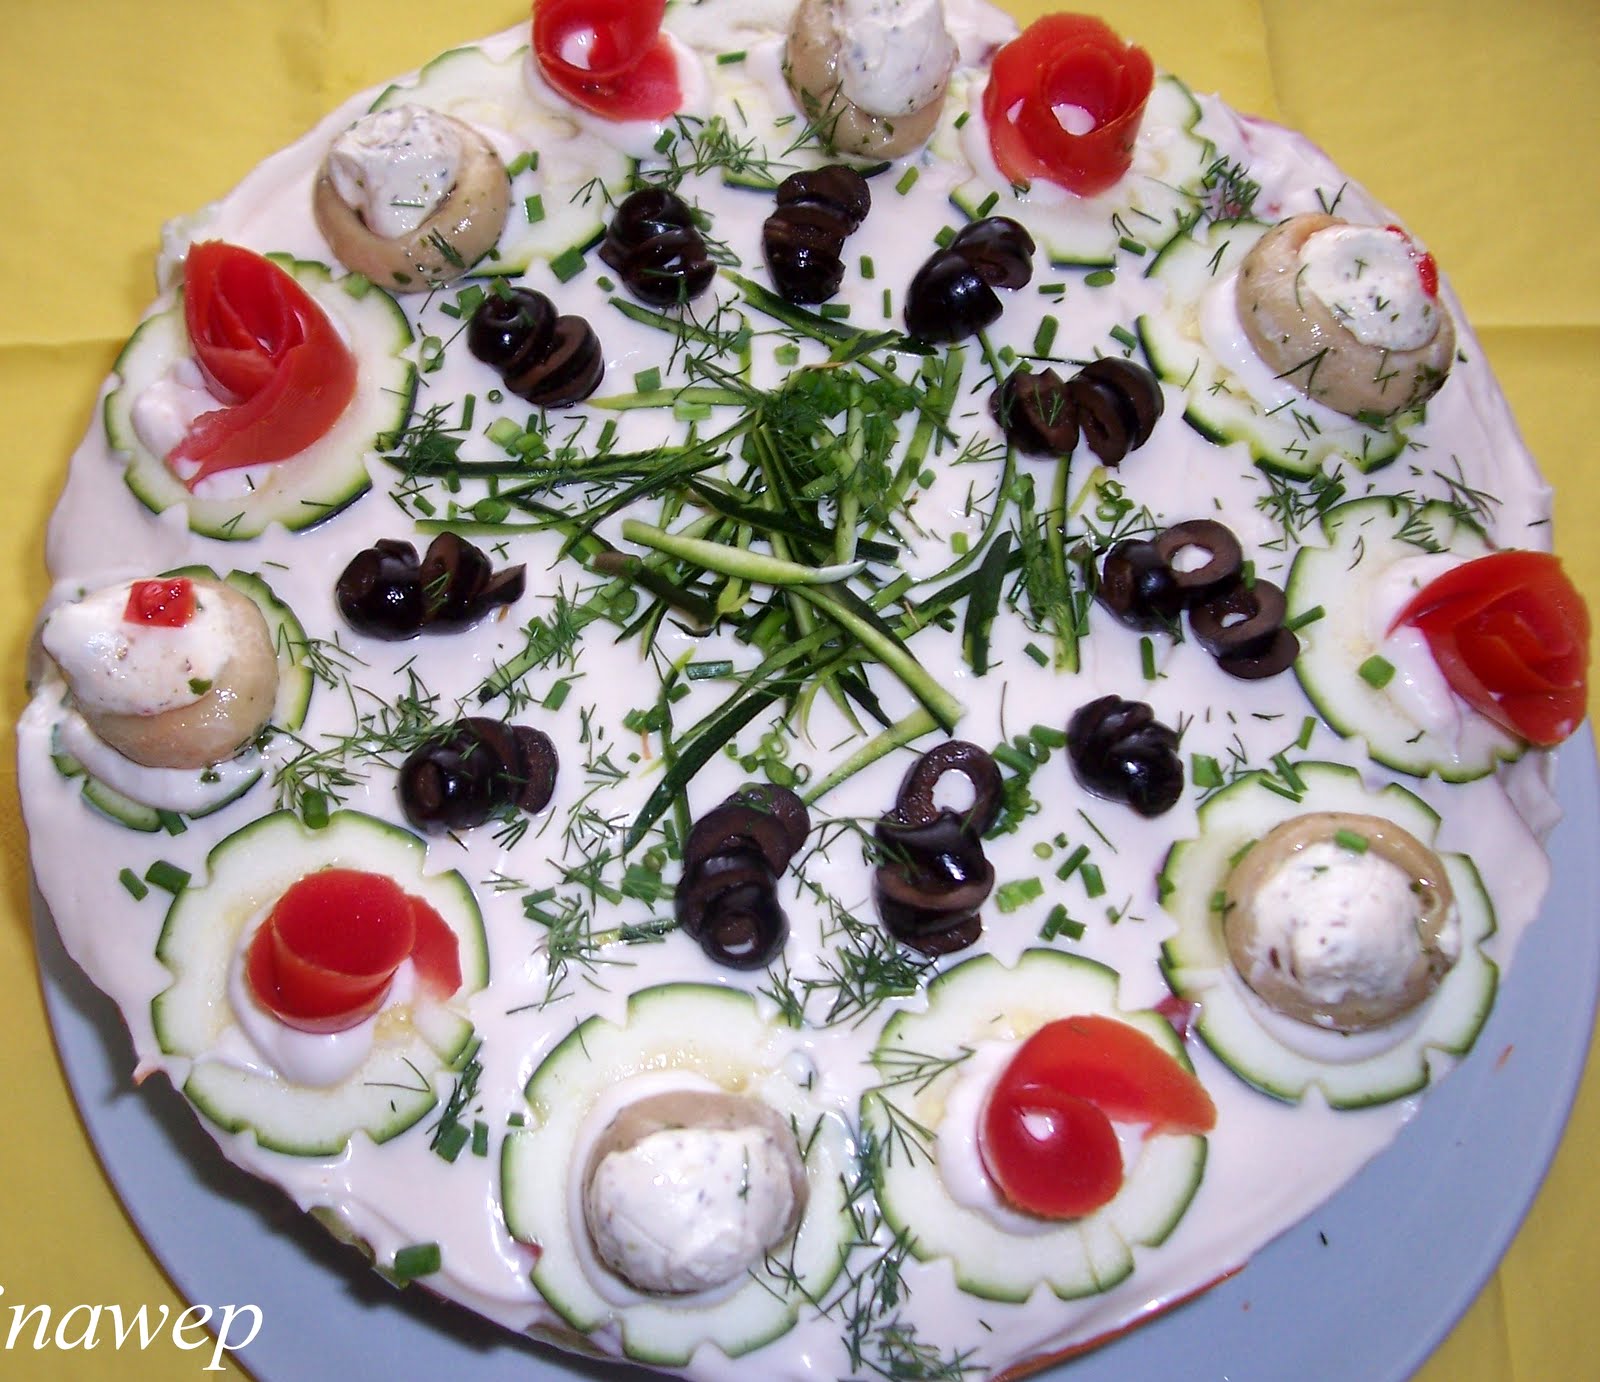 Martinas Kochküche: Salattorte